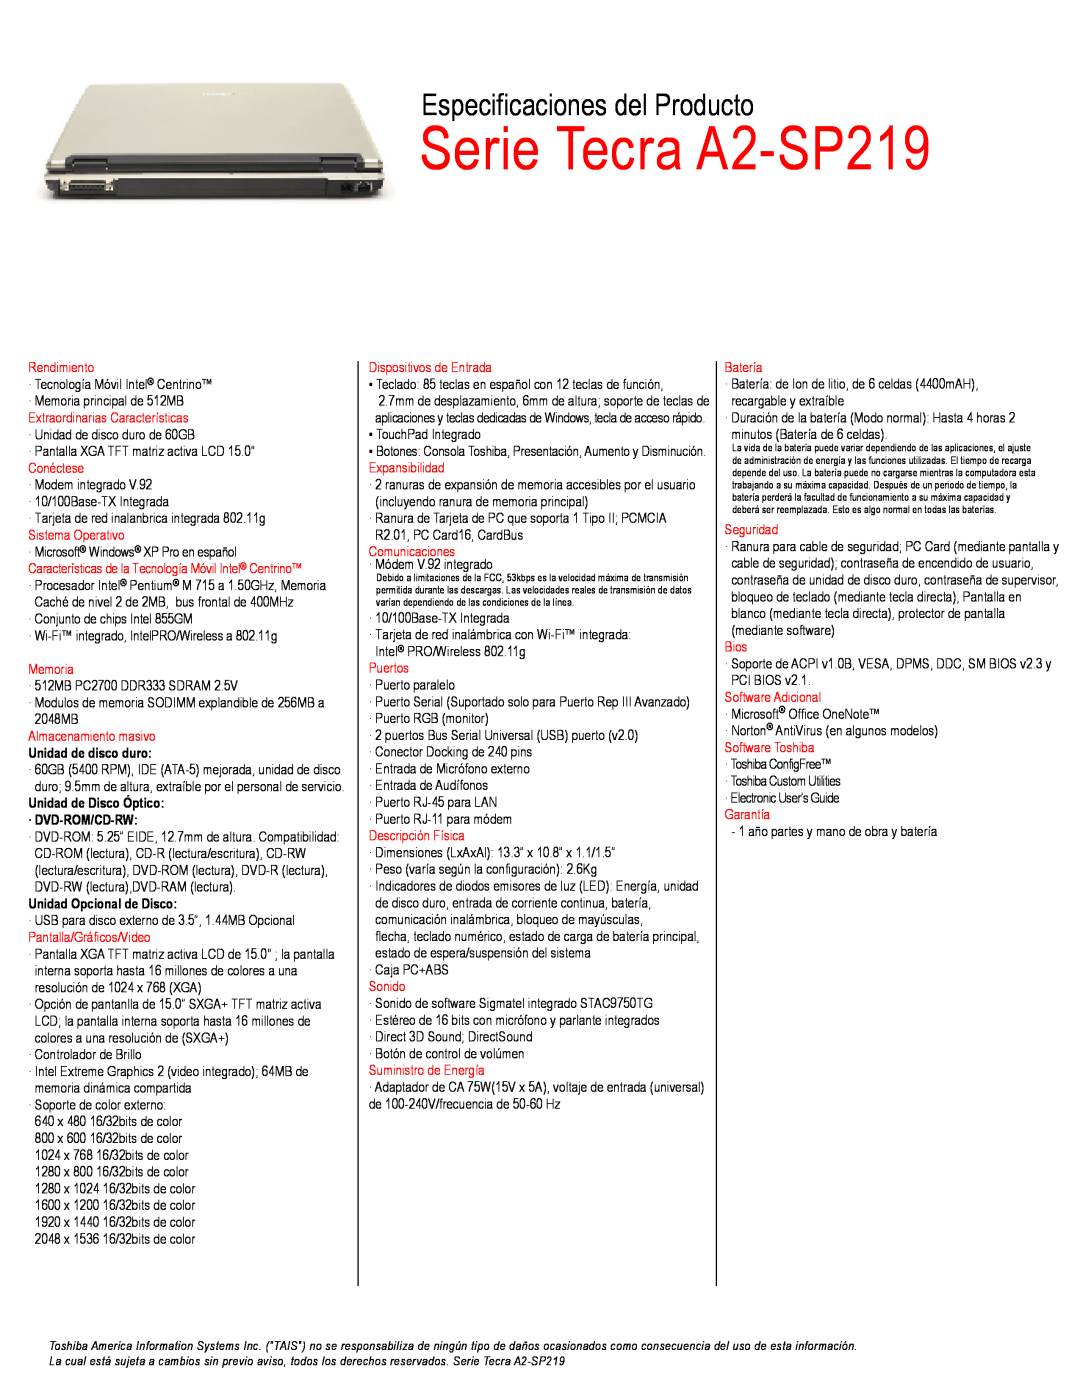 Toshiba manual Serie Tecra A2-SP219, Especificaciones del Producto, Unidad de disco duro, Unidad Opcional de Disco 